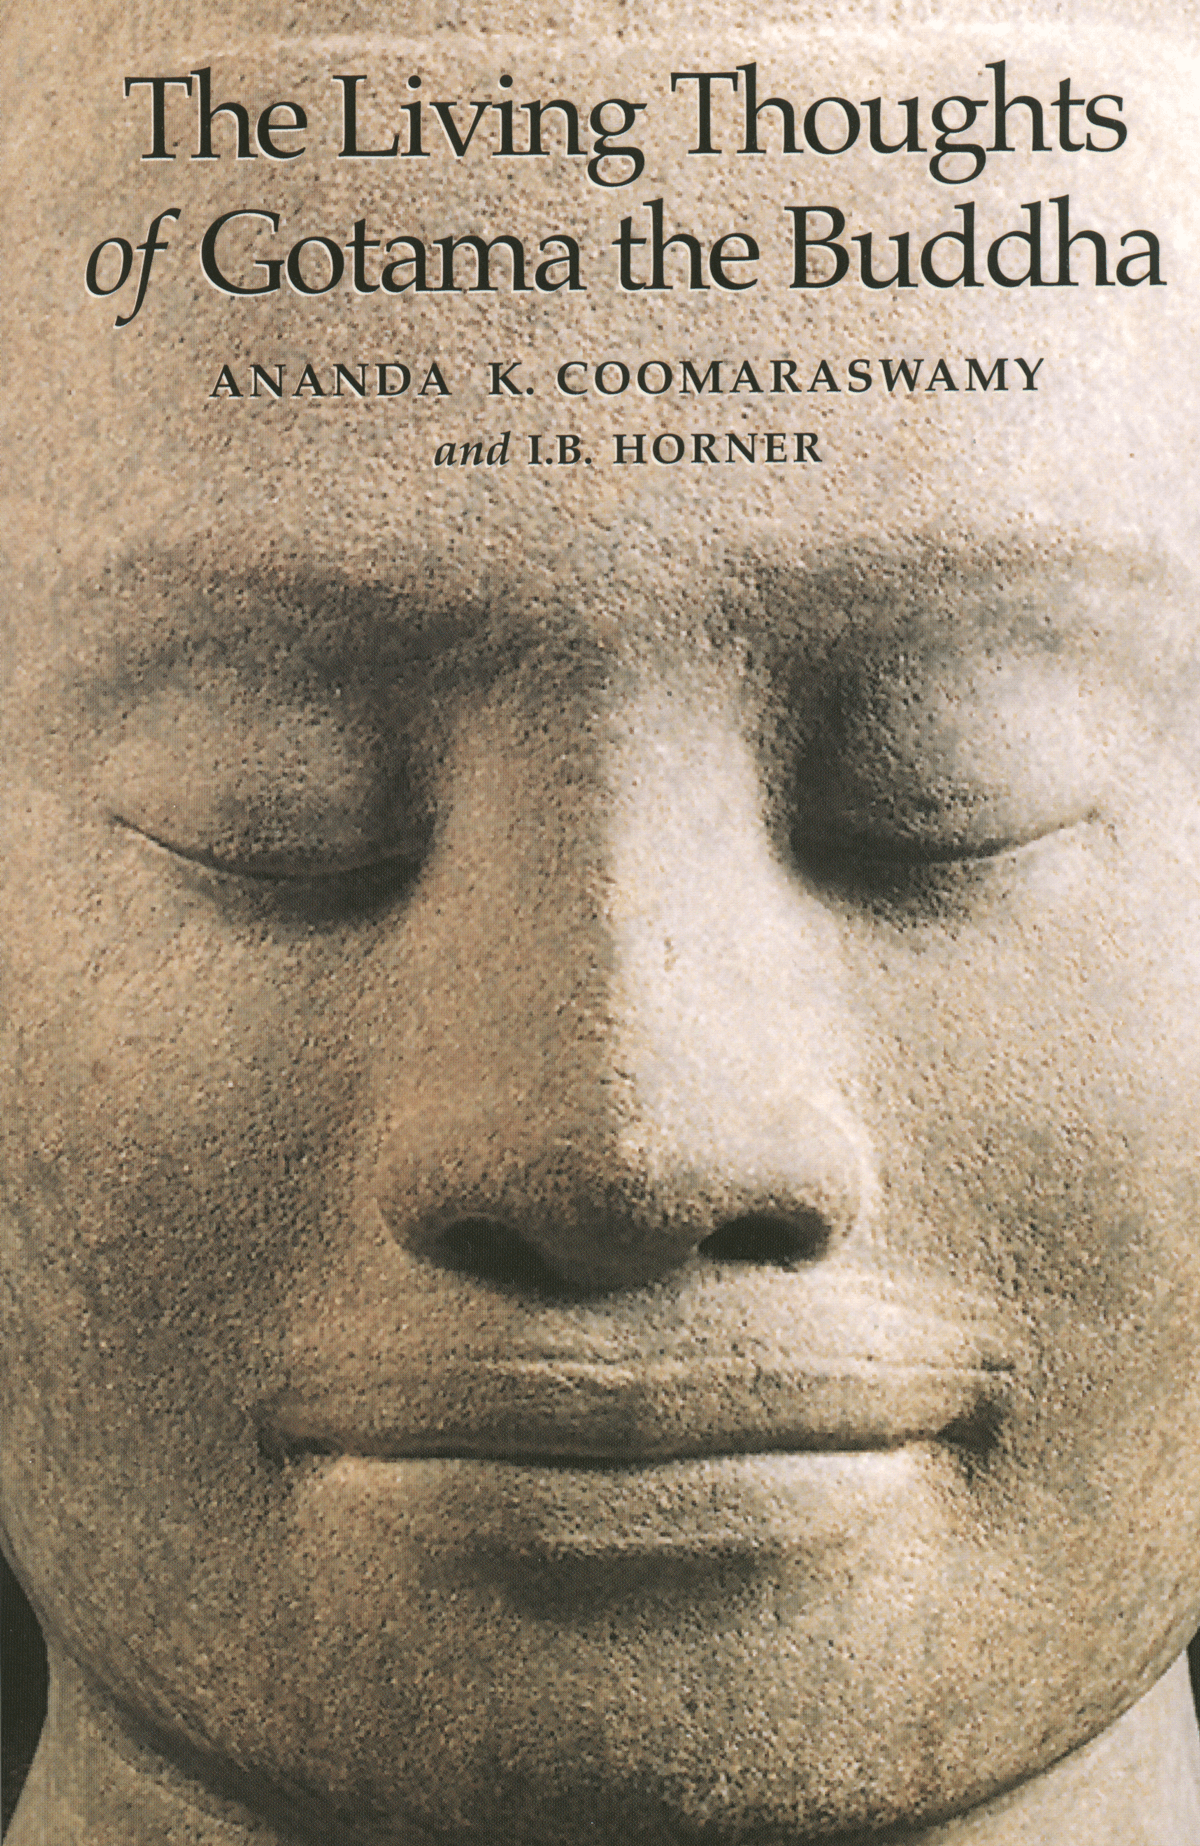 The Origin of the Buddha Image Elements of Buddhist Iconography
Epub-Ebook